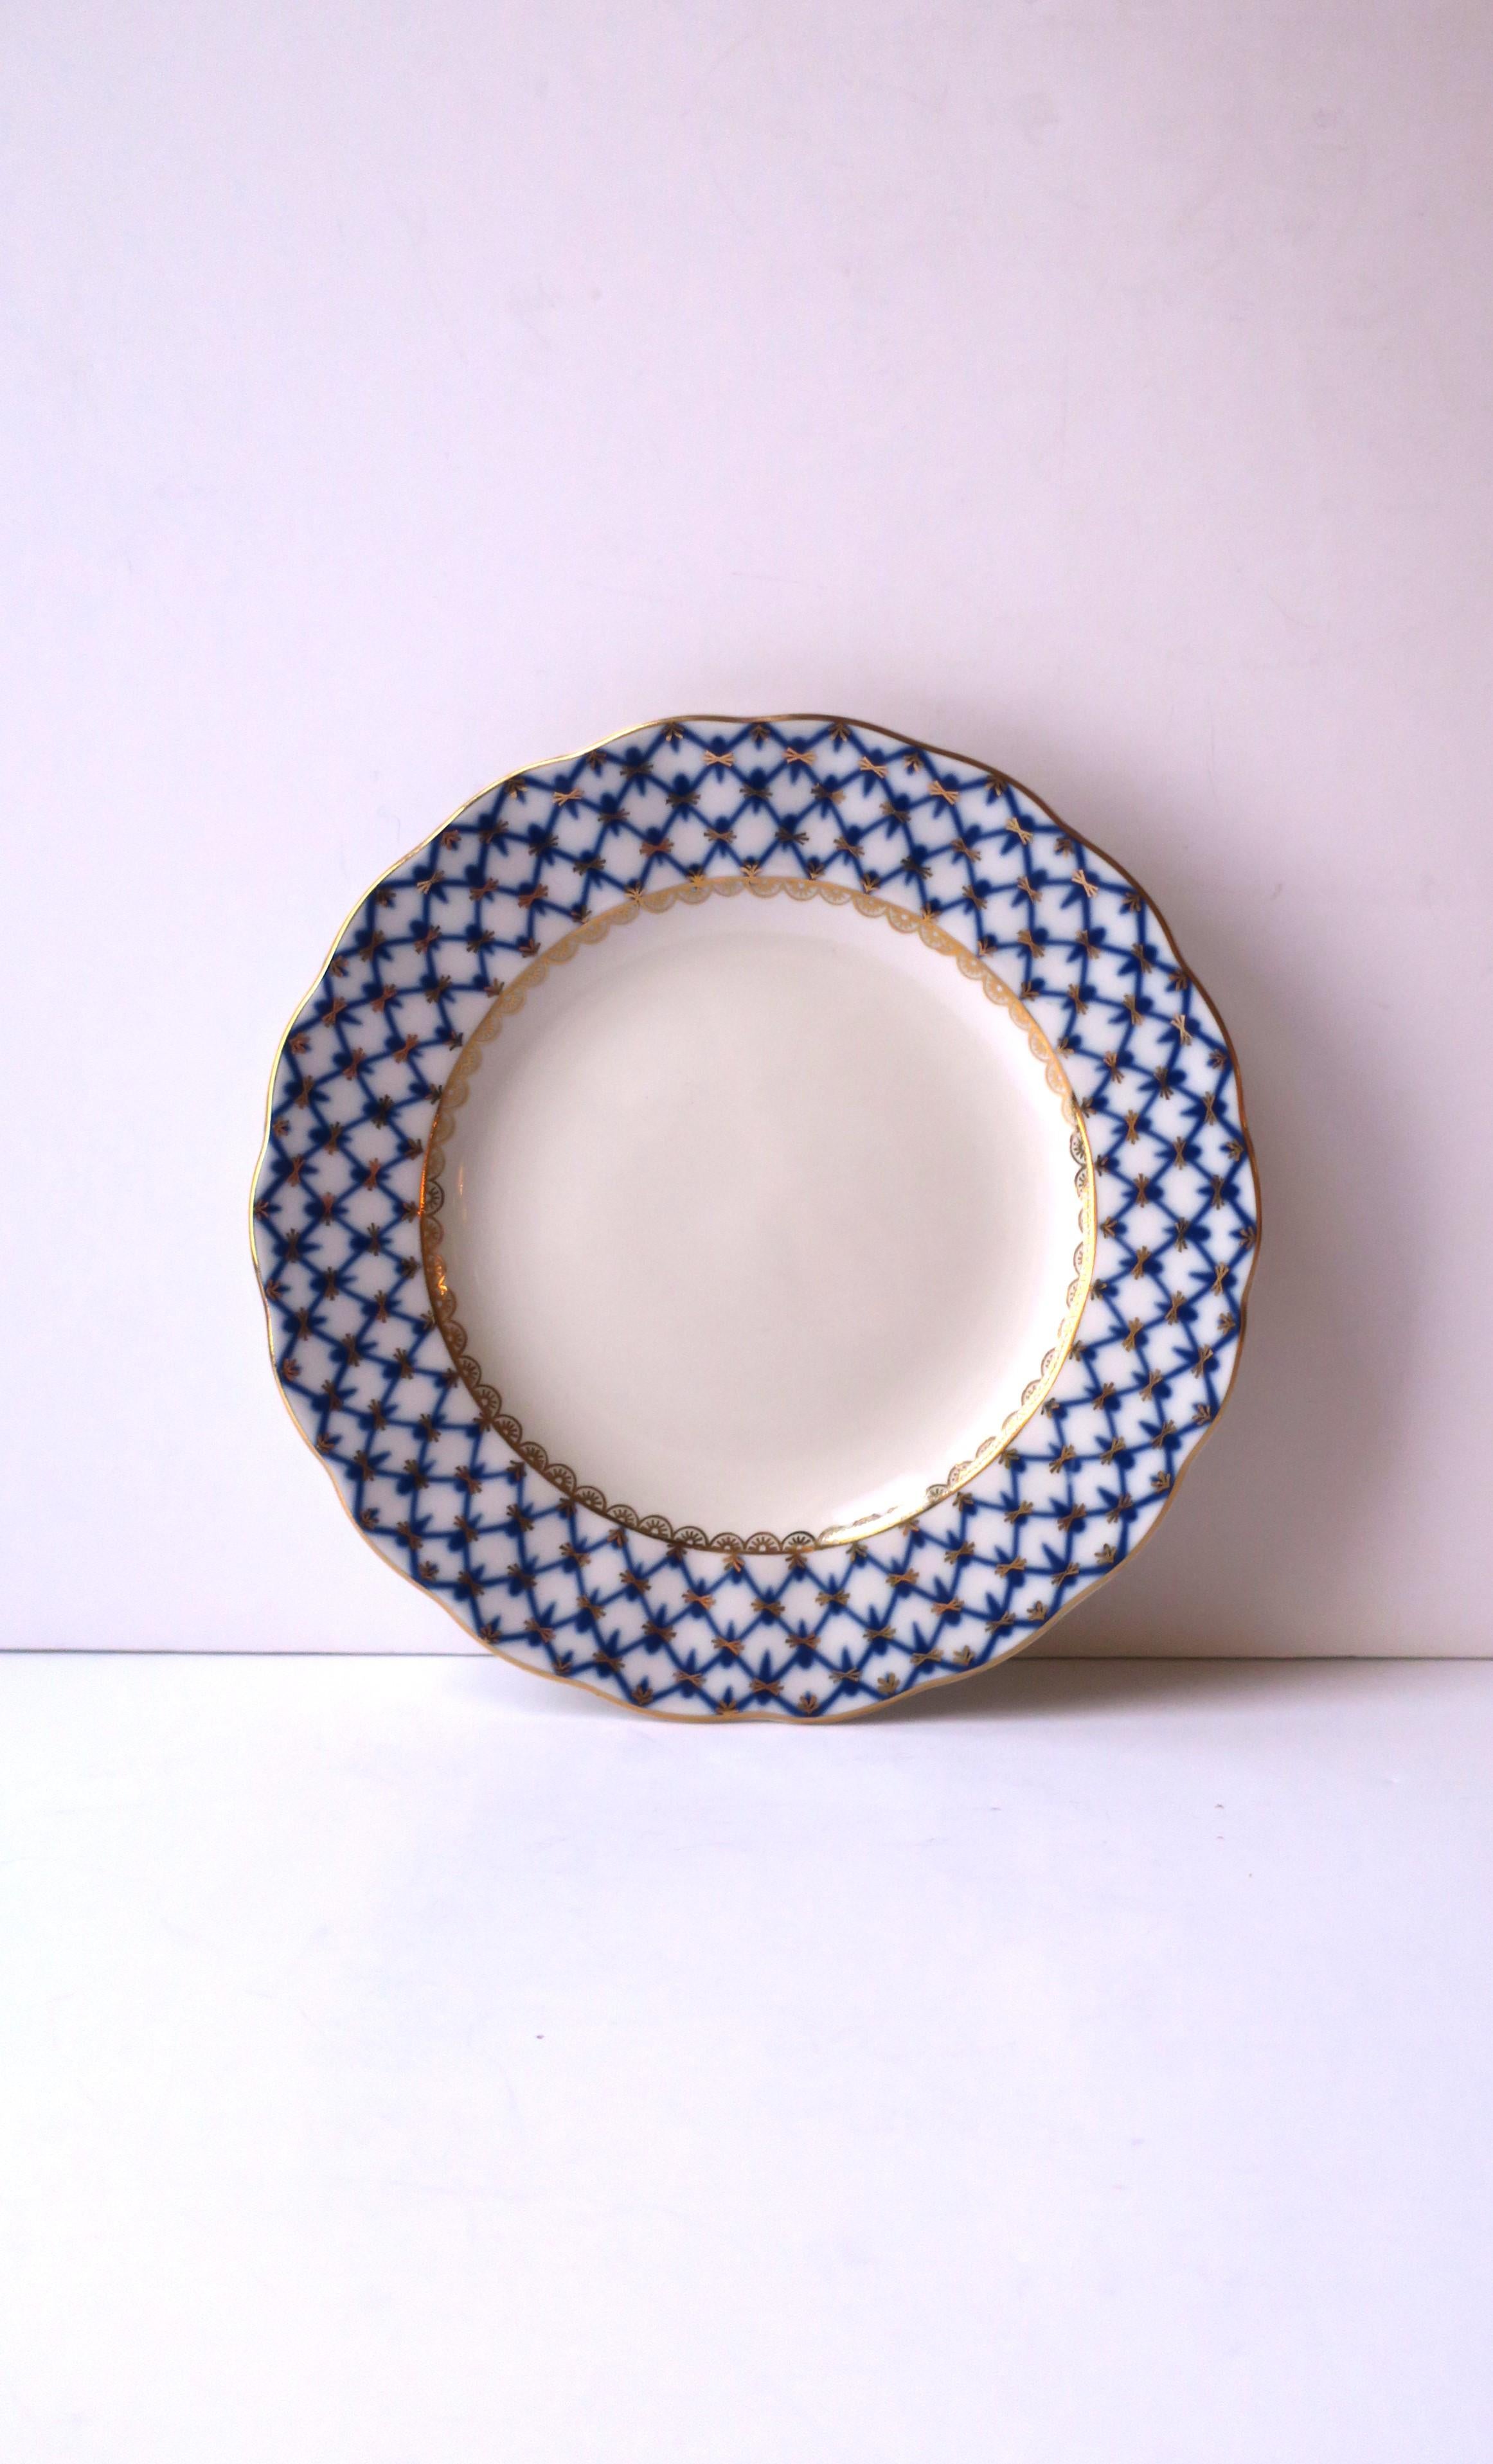 Magnifique assiette russe en porcelaine bleue, or et blanche au motif 